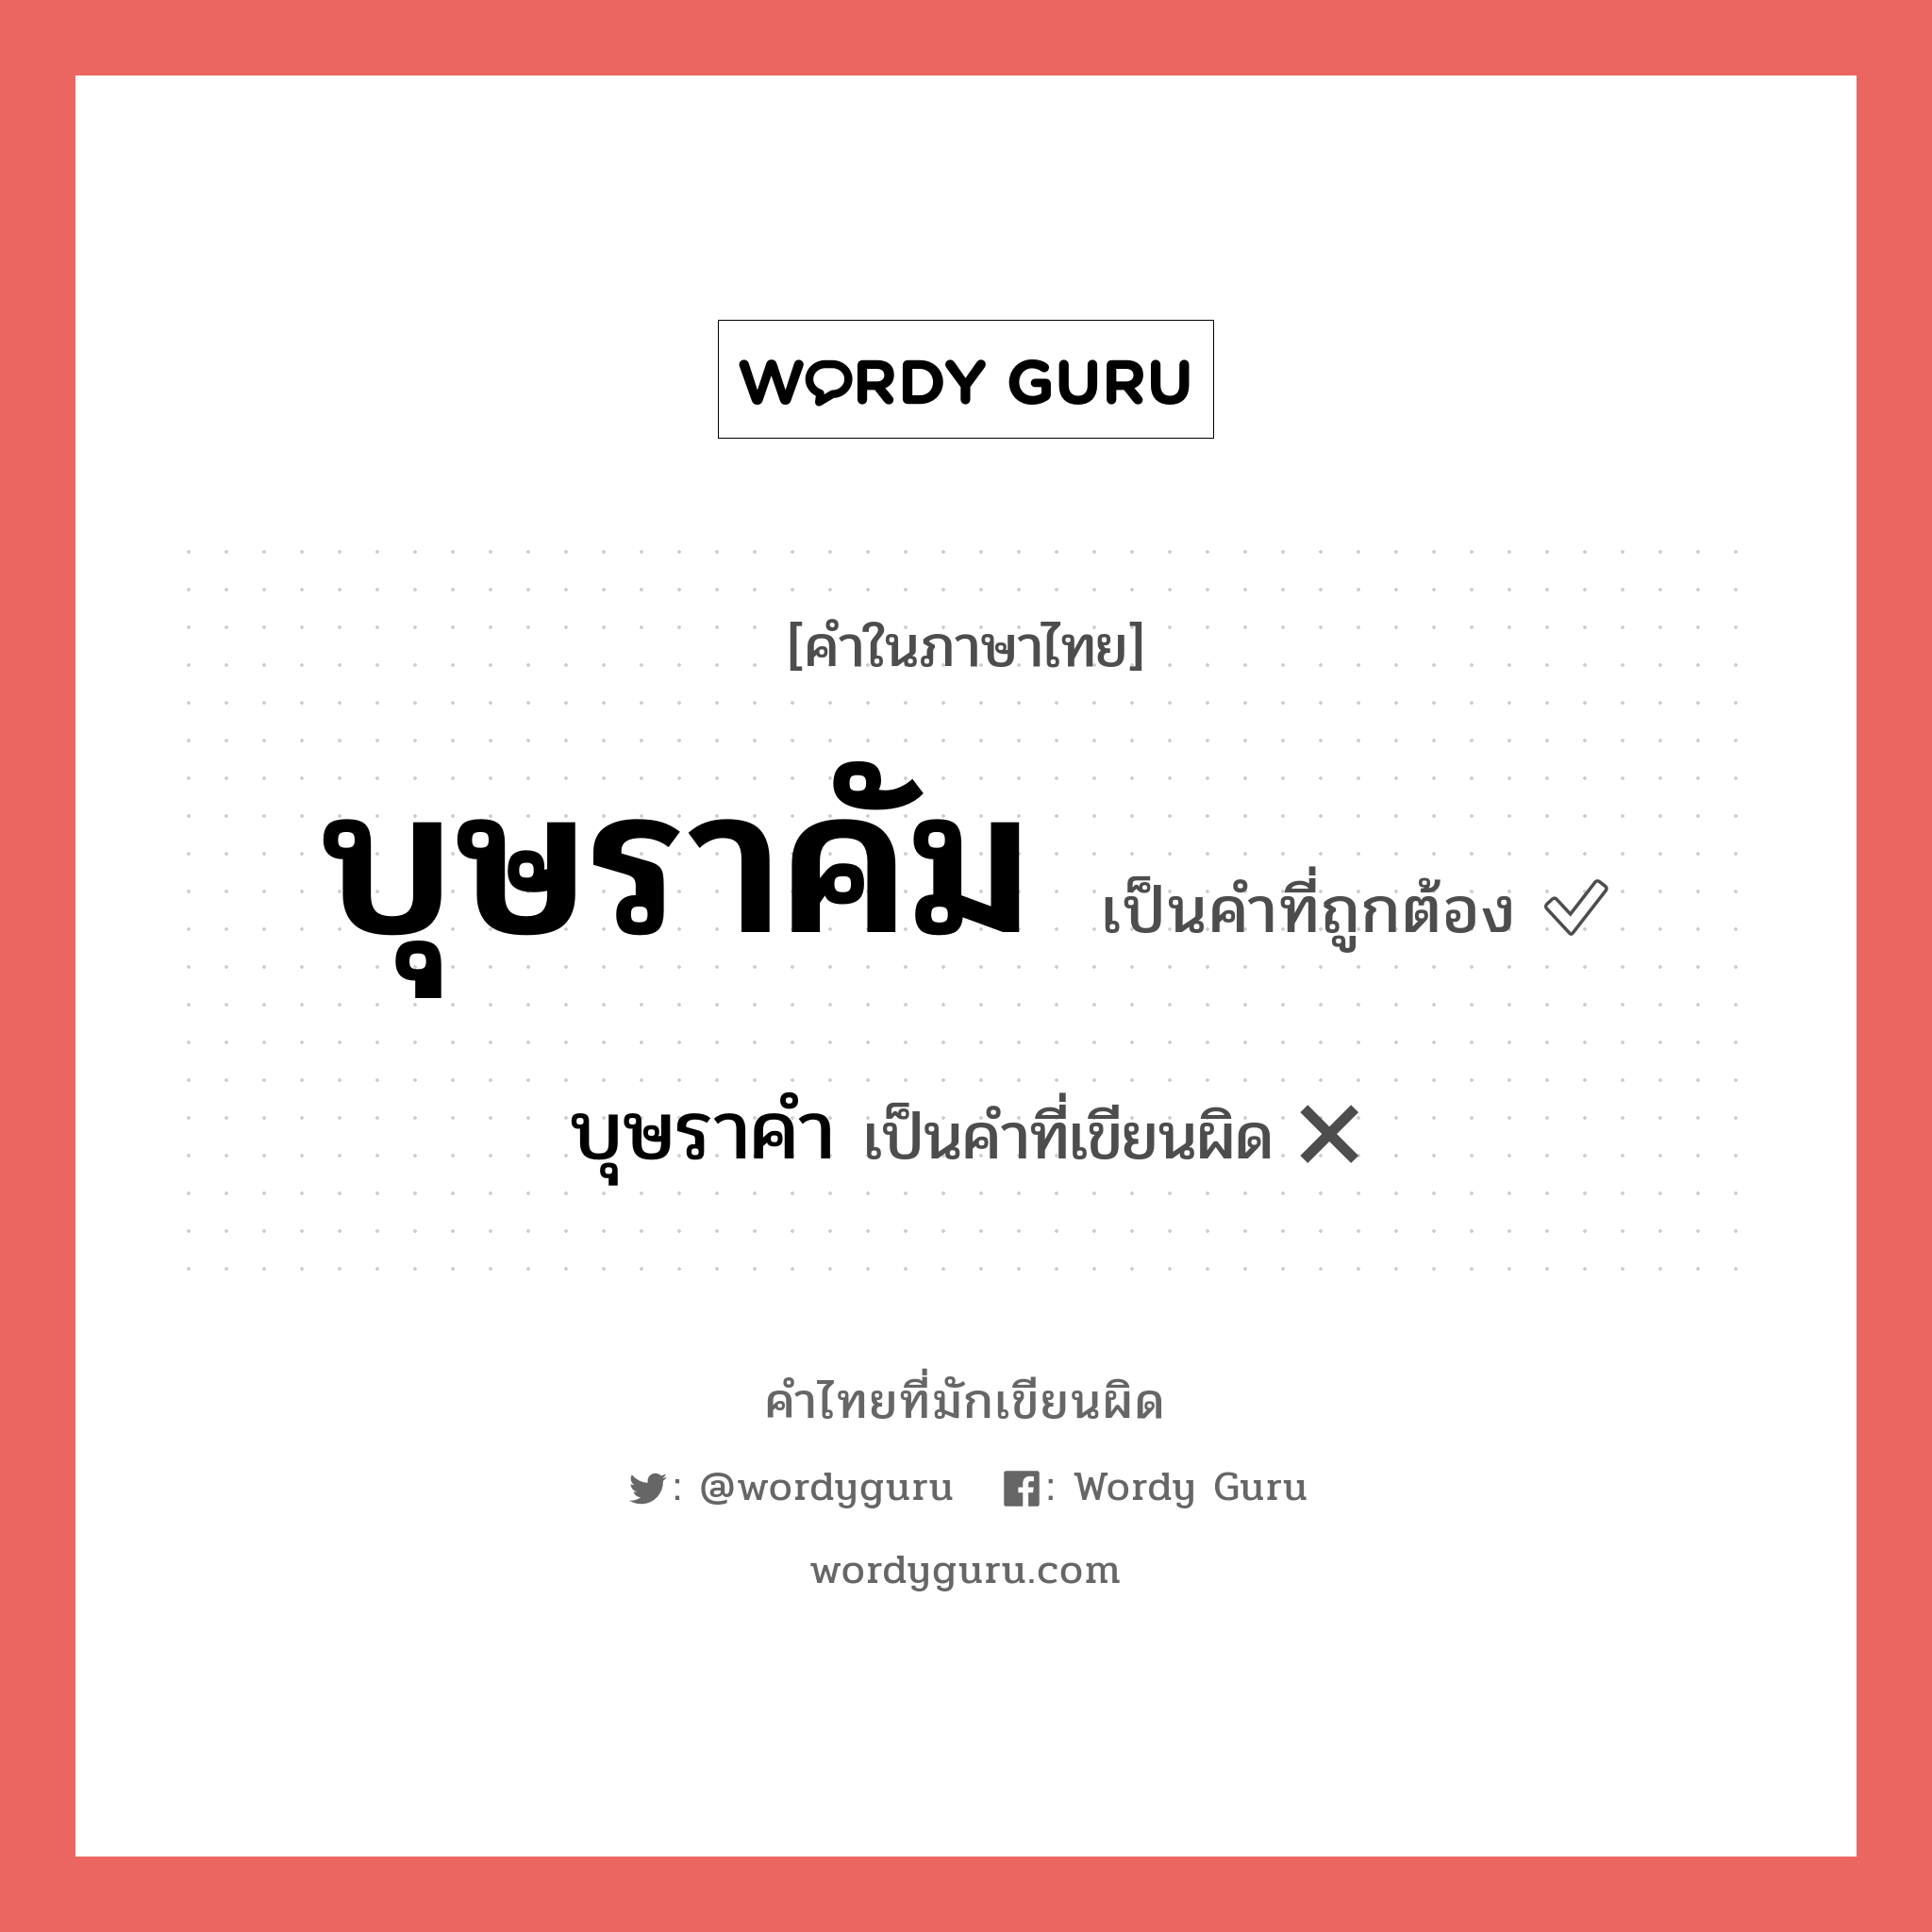 บุษราคำ หรือ บุษราคัม คำไหนเขียนถูก?, คำในภาษาไทยที่มักเขียนผิด บุษราคำ คำที่ผิด ❌ บุษราคัม